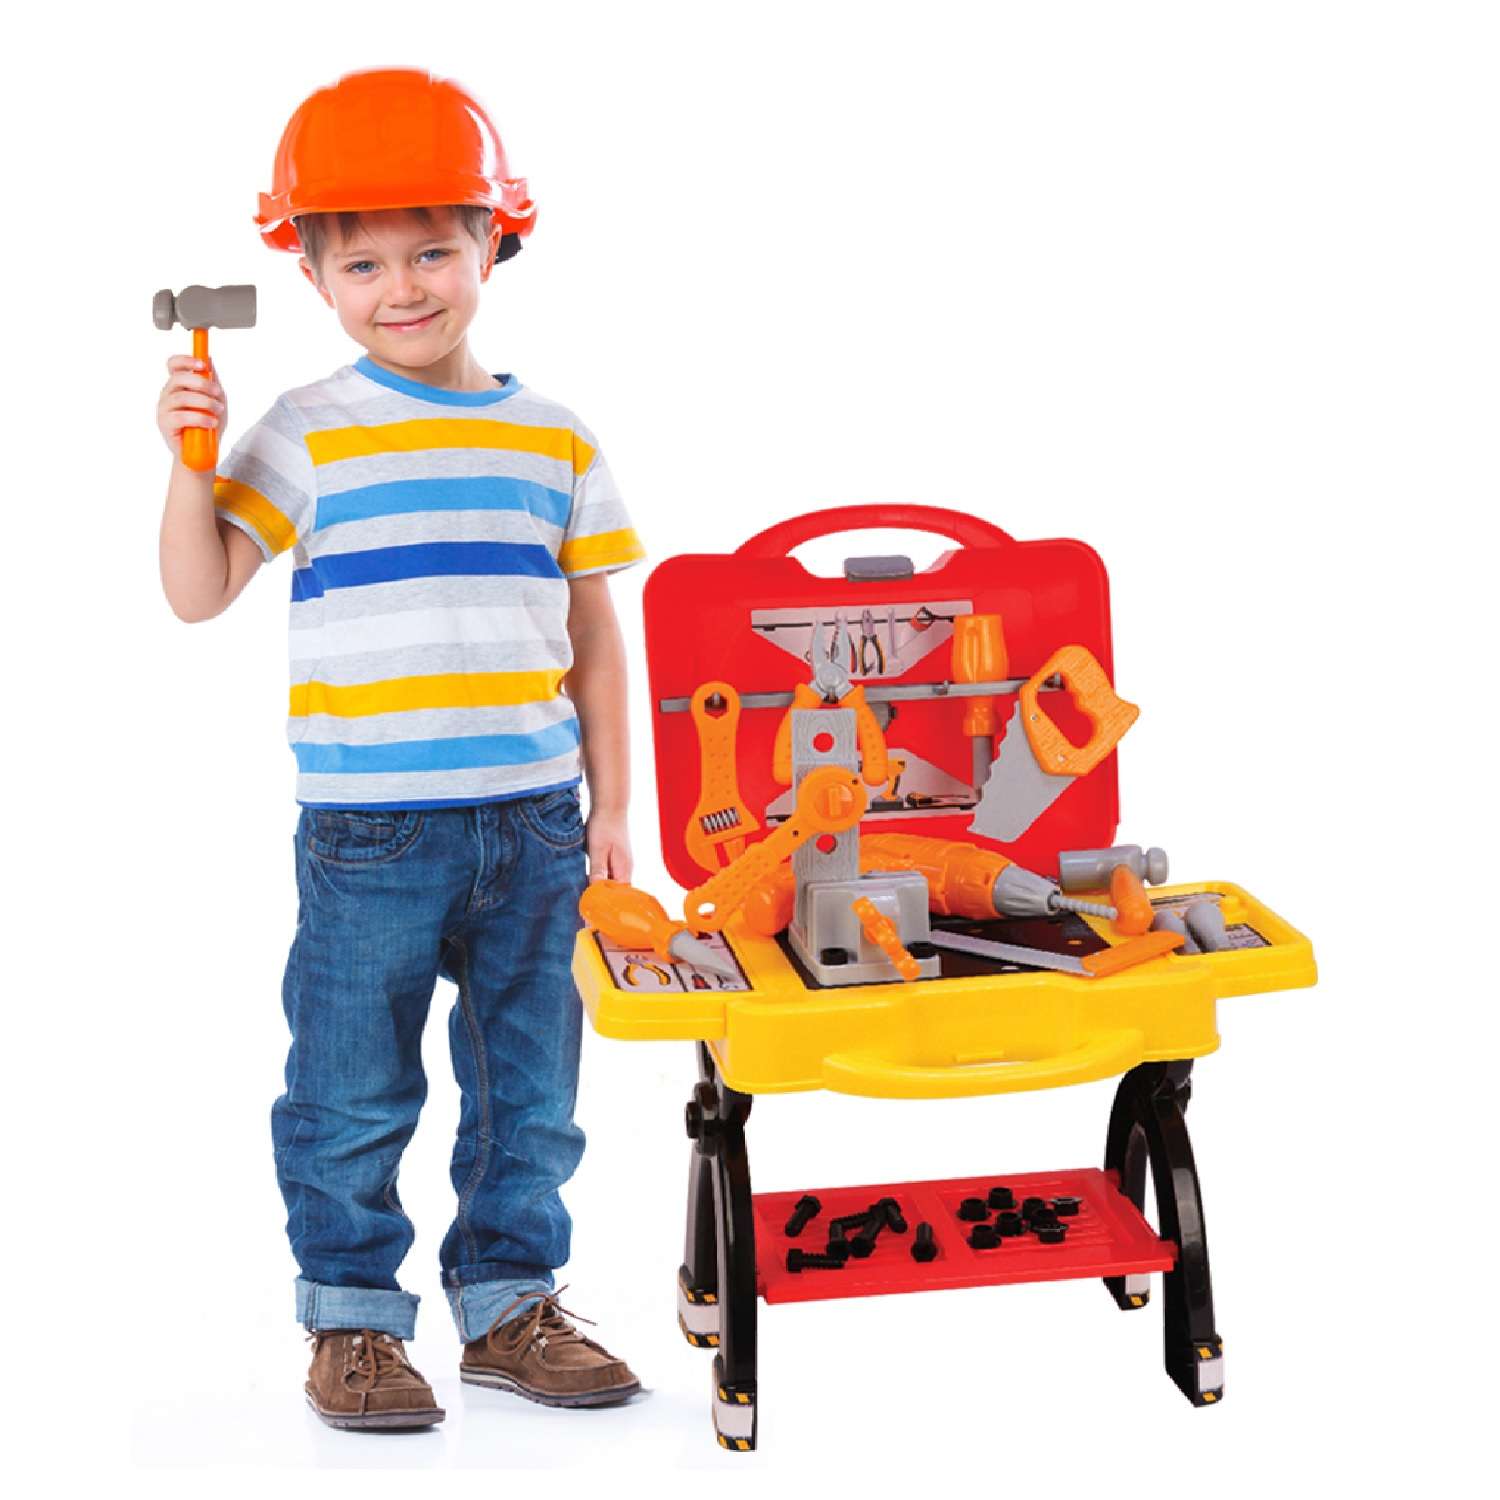 Игровой набор детский Green Plast игрушечные инструменты Мобильная мастерская для мальчика - фото 4